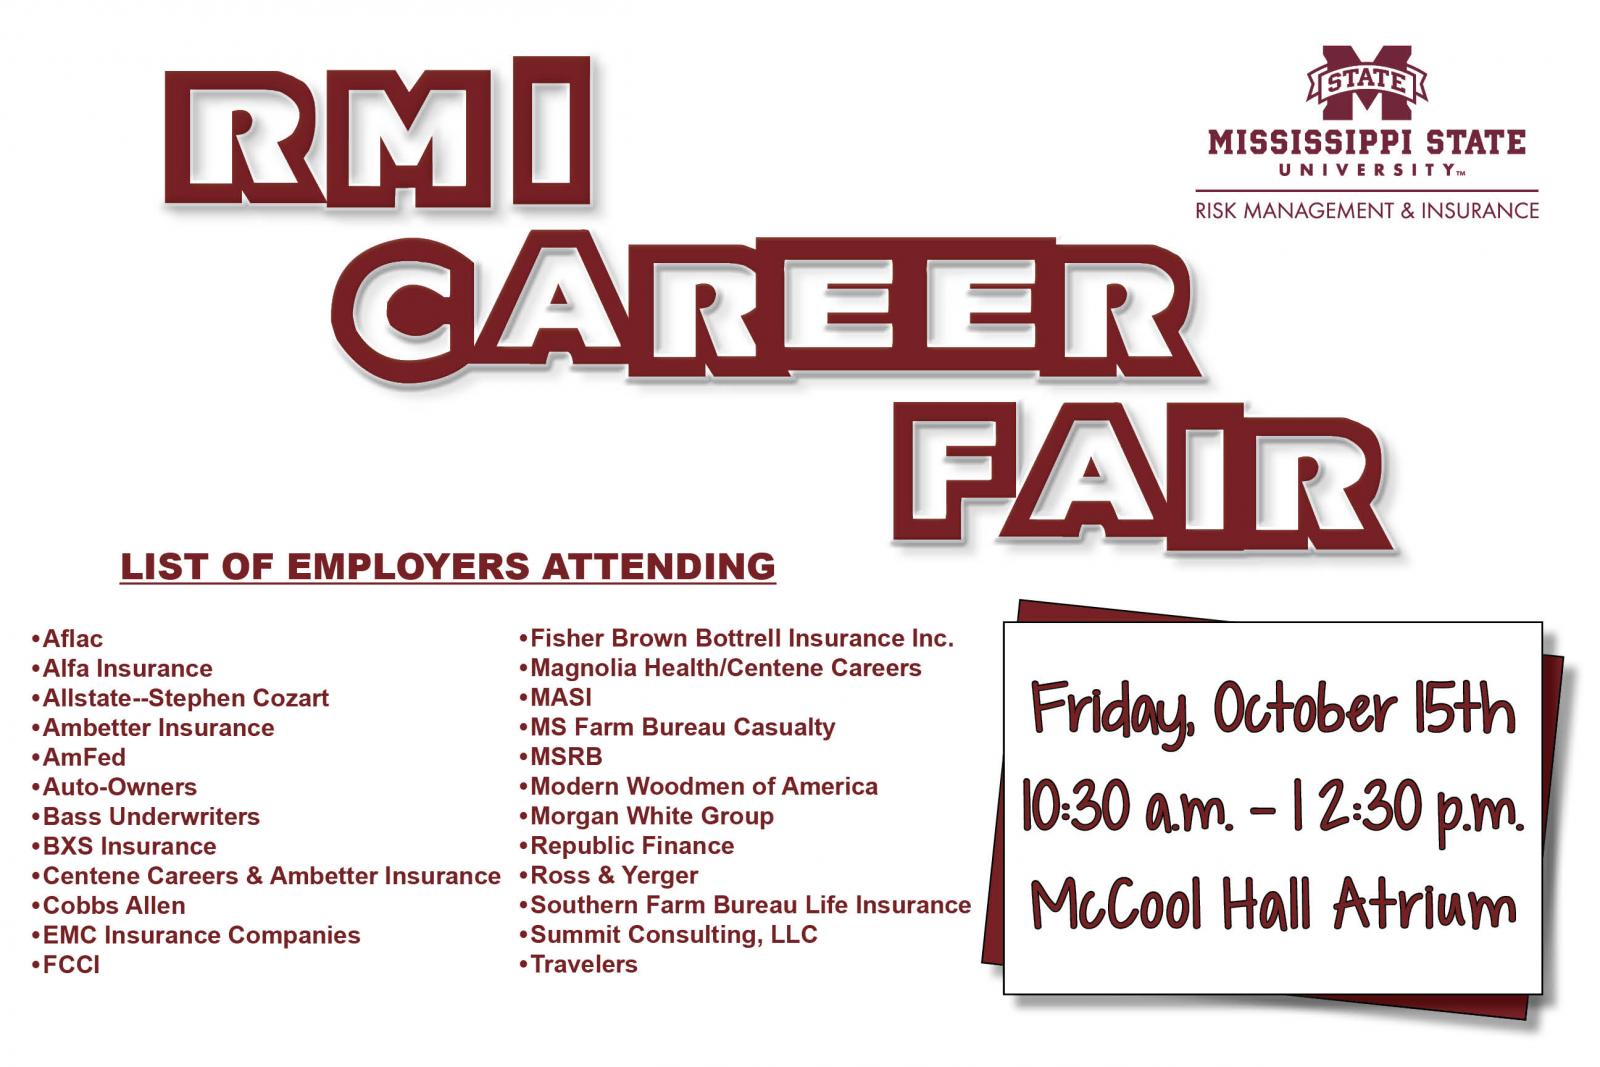 RMI Career Fair on Friday, October 15th